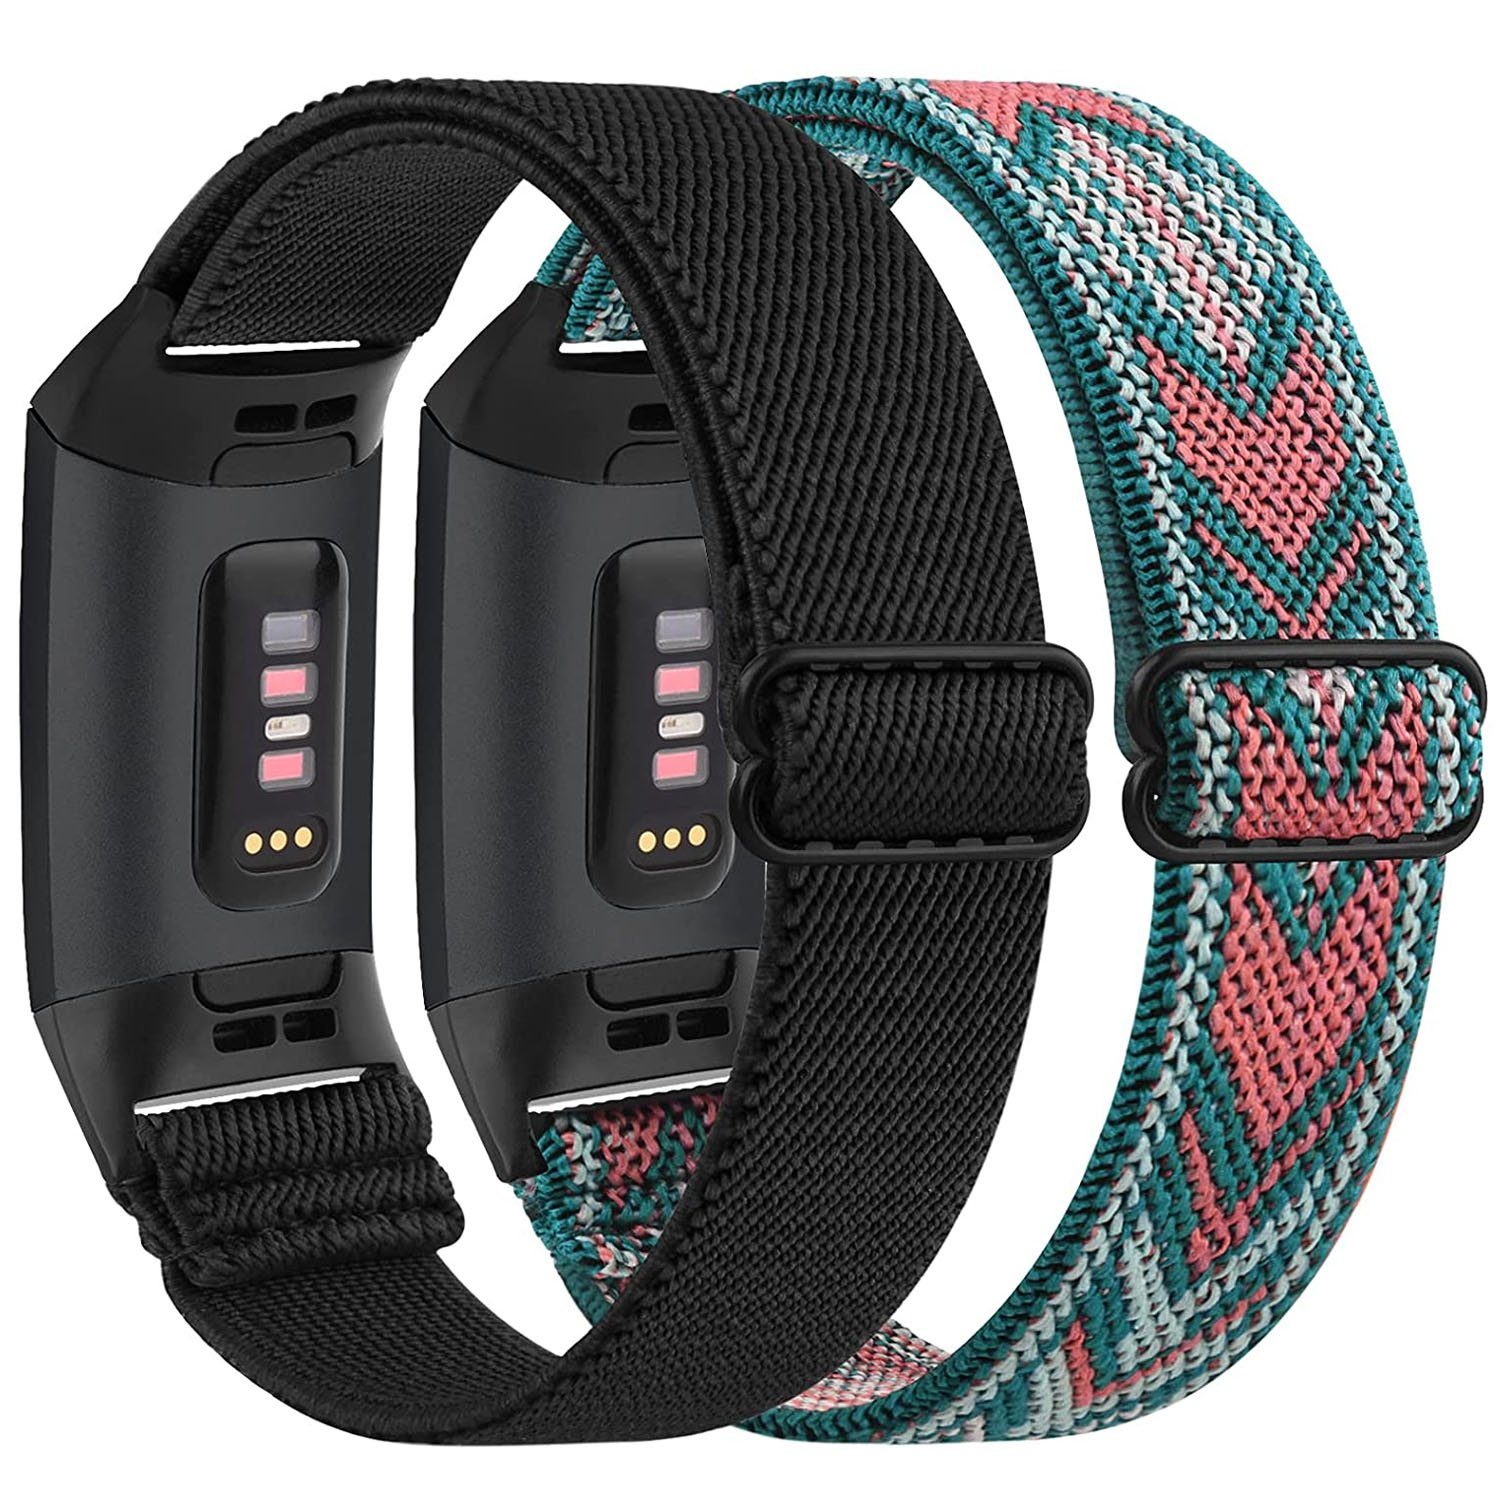 zggzerg Uhrenarmband 2 Stück Elastische Armband Kompatibel für Fitbit Charge Schwarz+Grüner pfeil